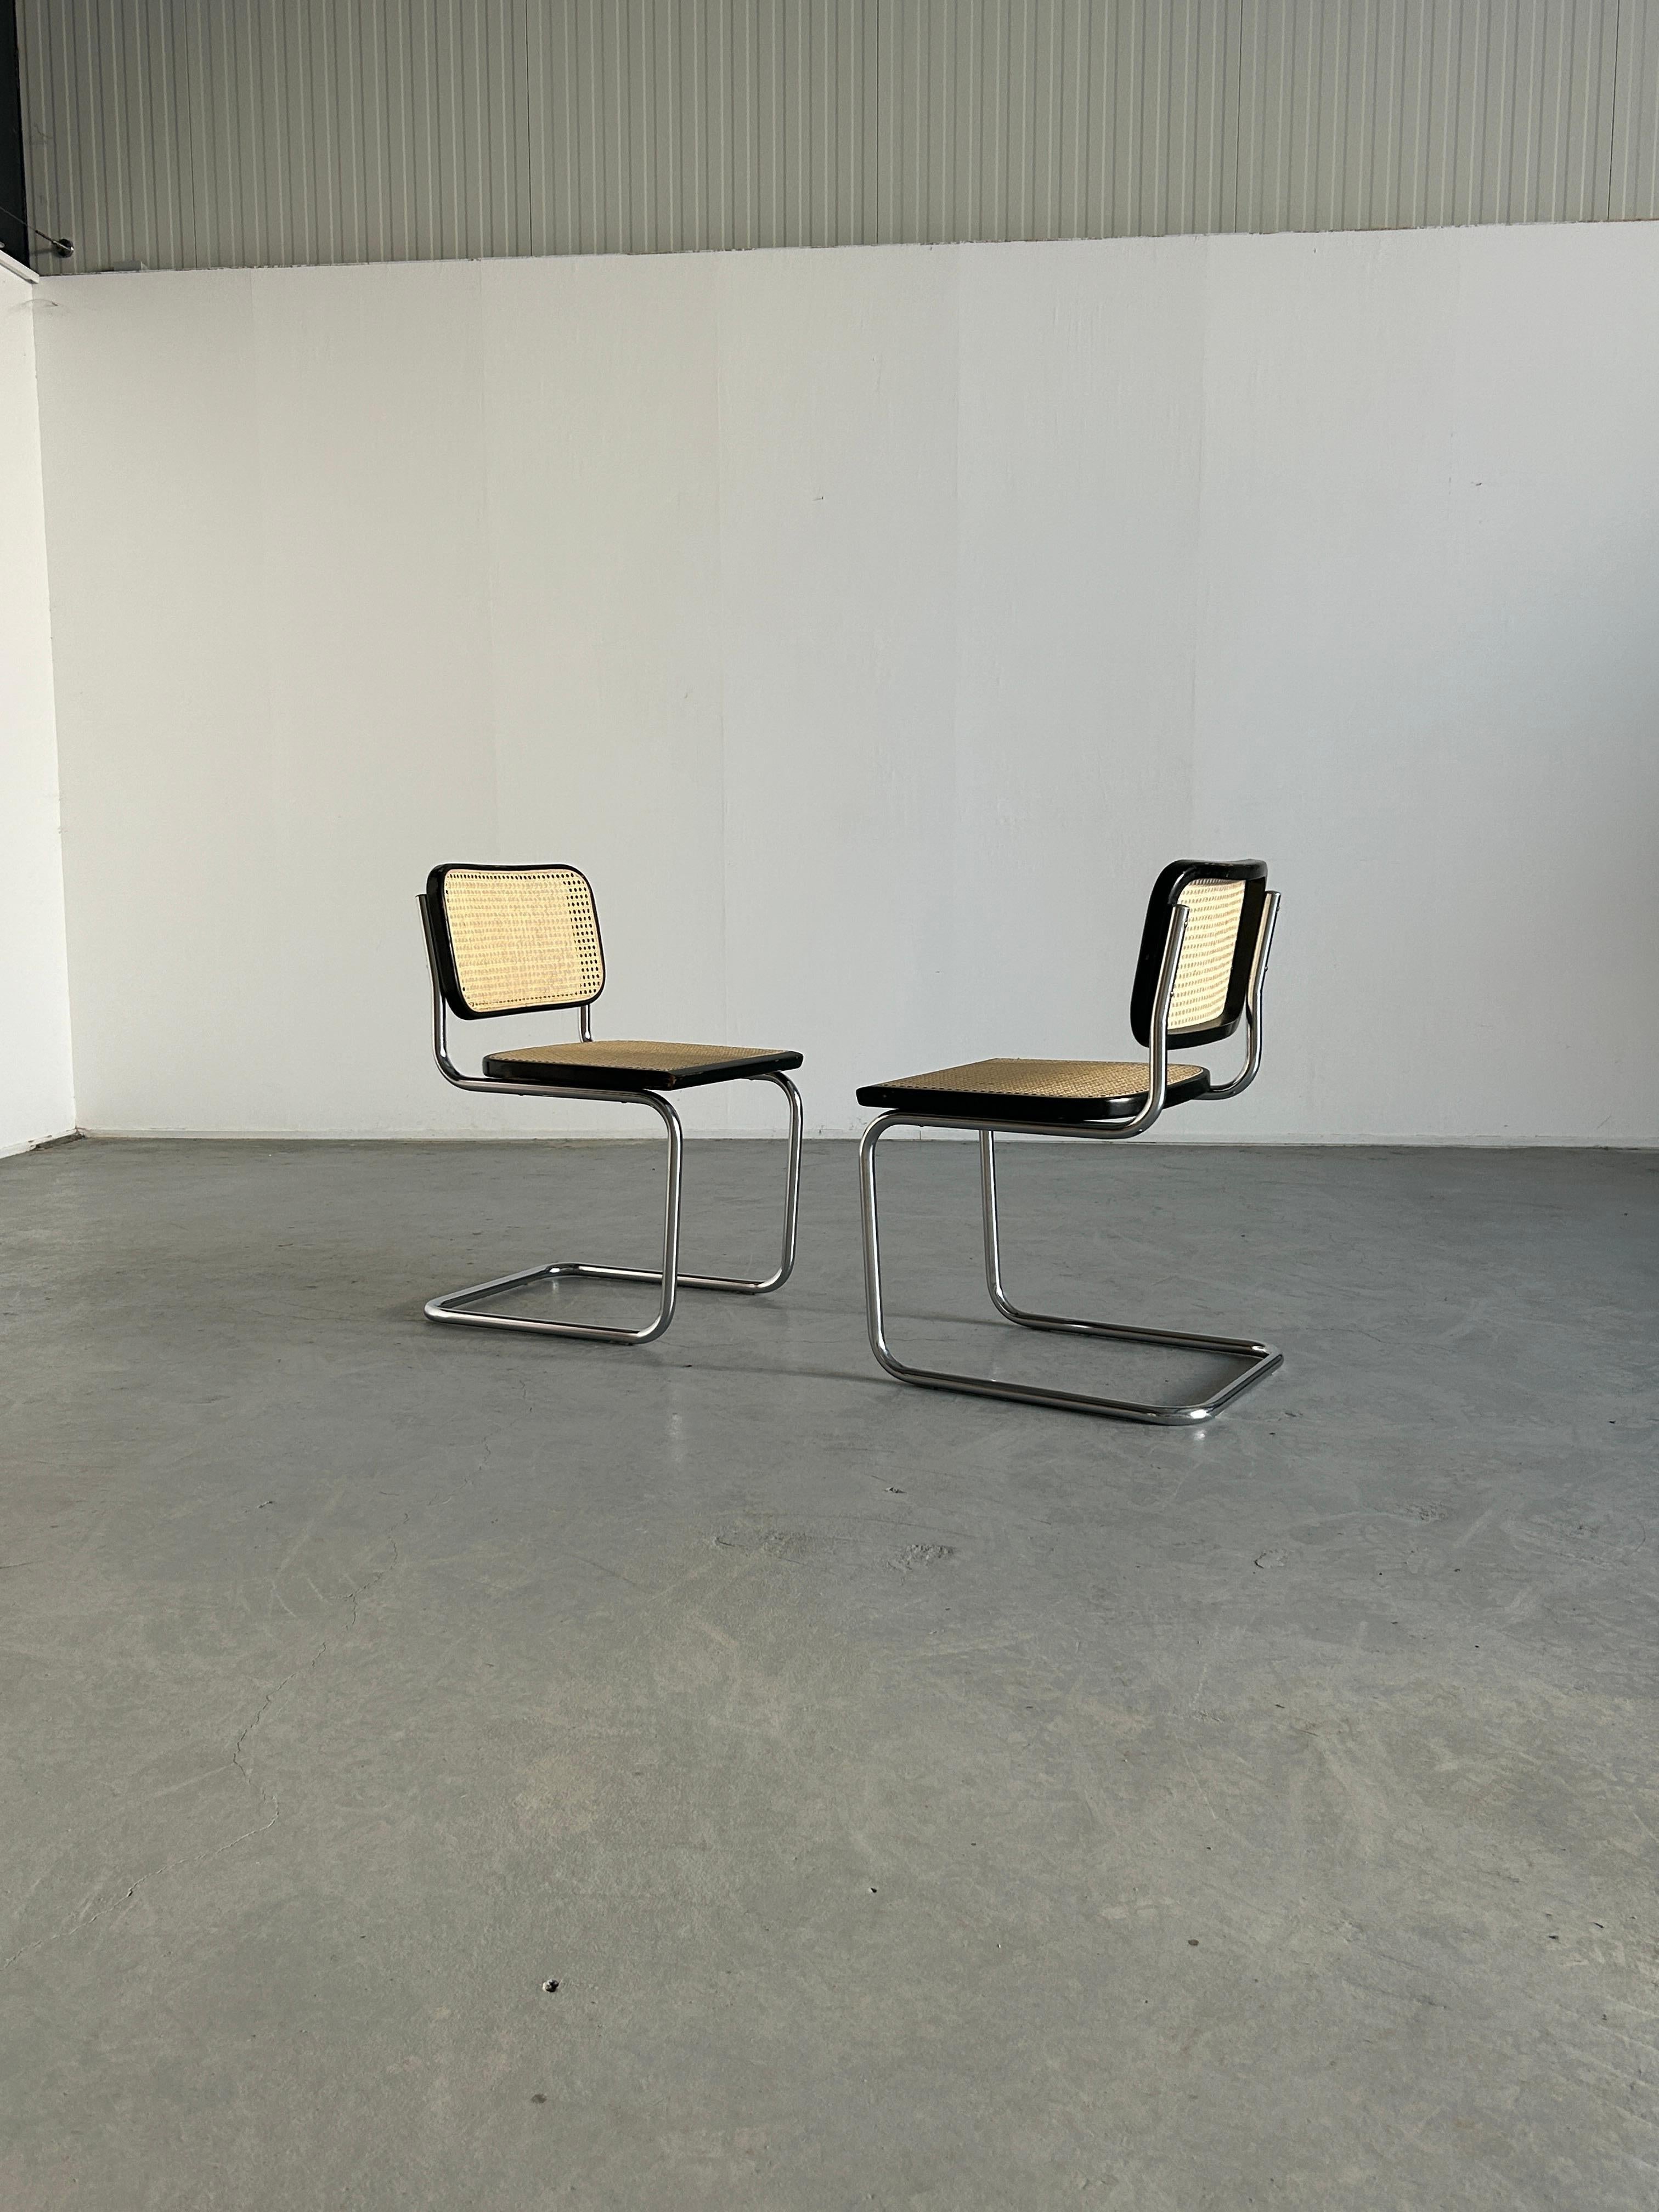 Une paire de magnifiques chaises luge vintage Marcel Breuer Design/One B32.
Pièces entièrement d'origine, et dans l'état vintage d'origine.

L'ancienne canne a été remplacée par une nouvelle canne Roddeka fabriquée à la main aux Pays-Bas.

Aucune